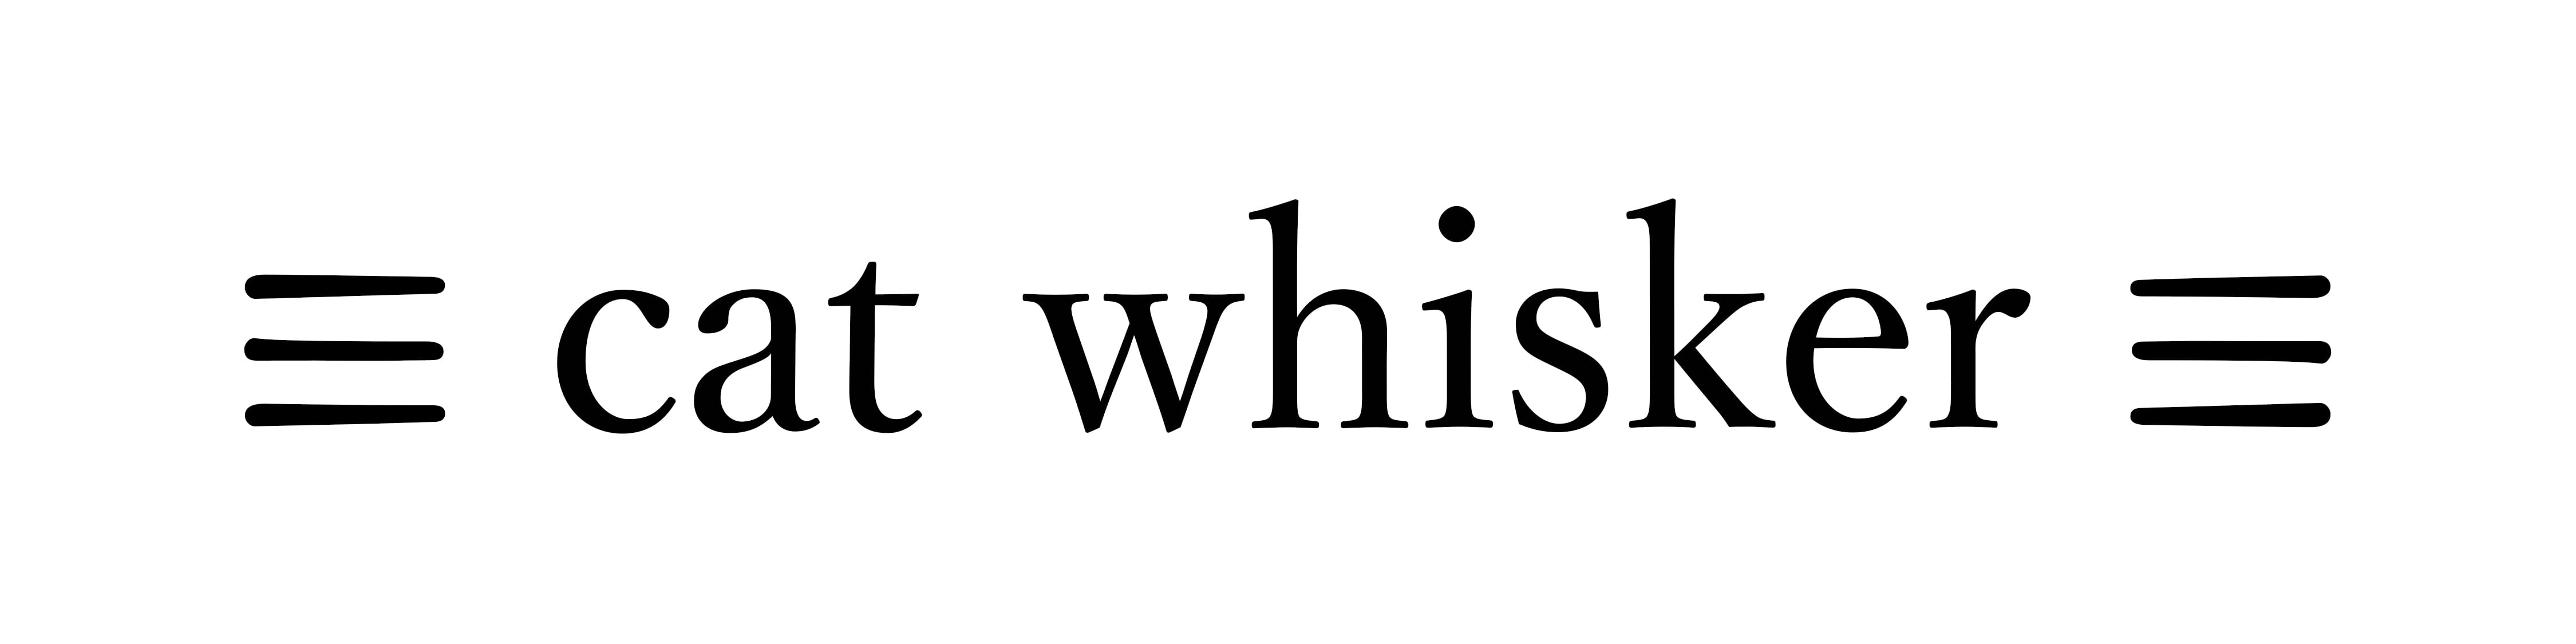 ≡cat whisker imaging≡